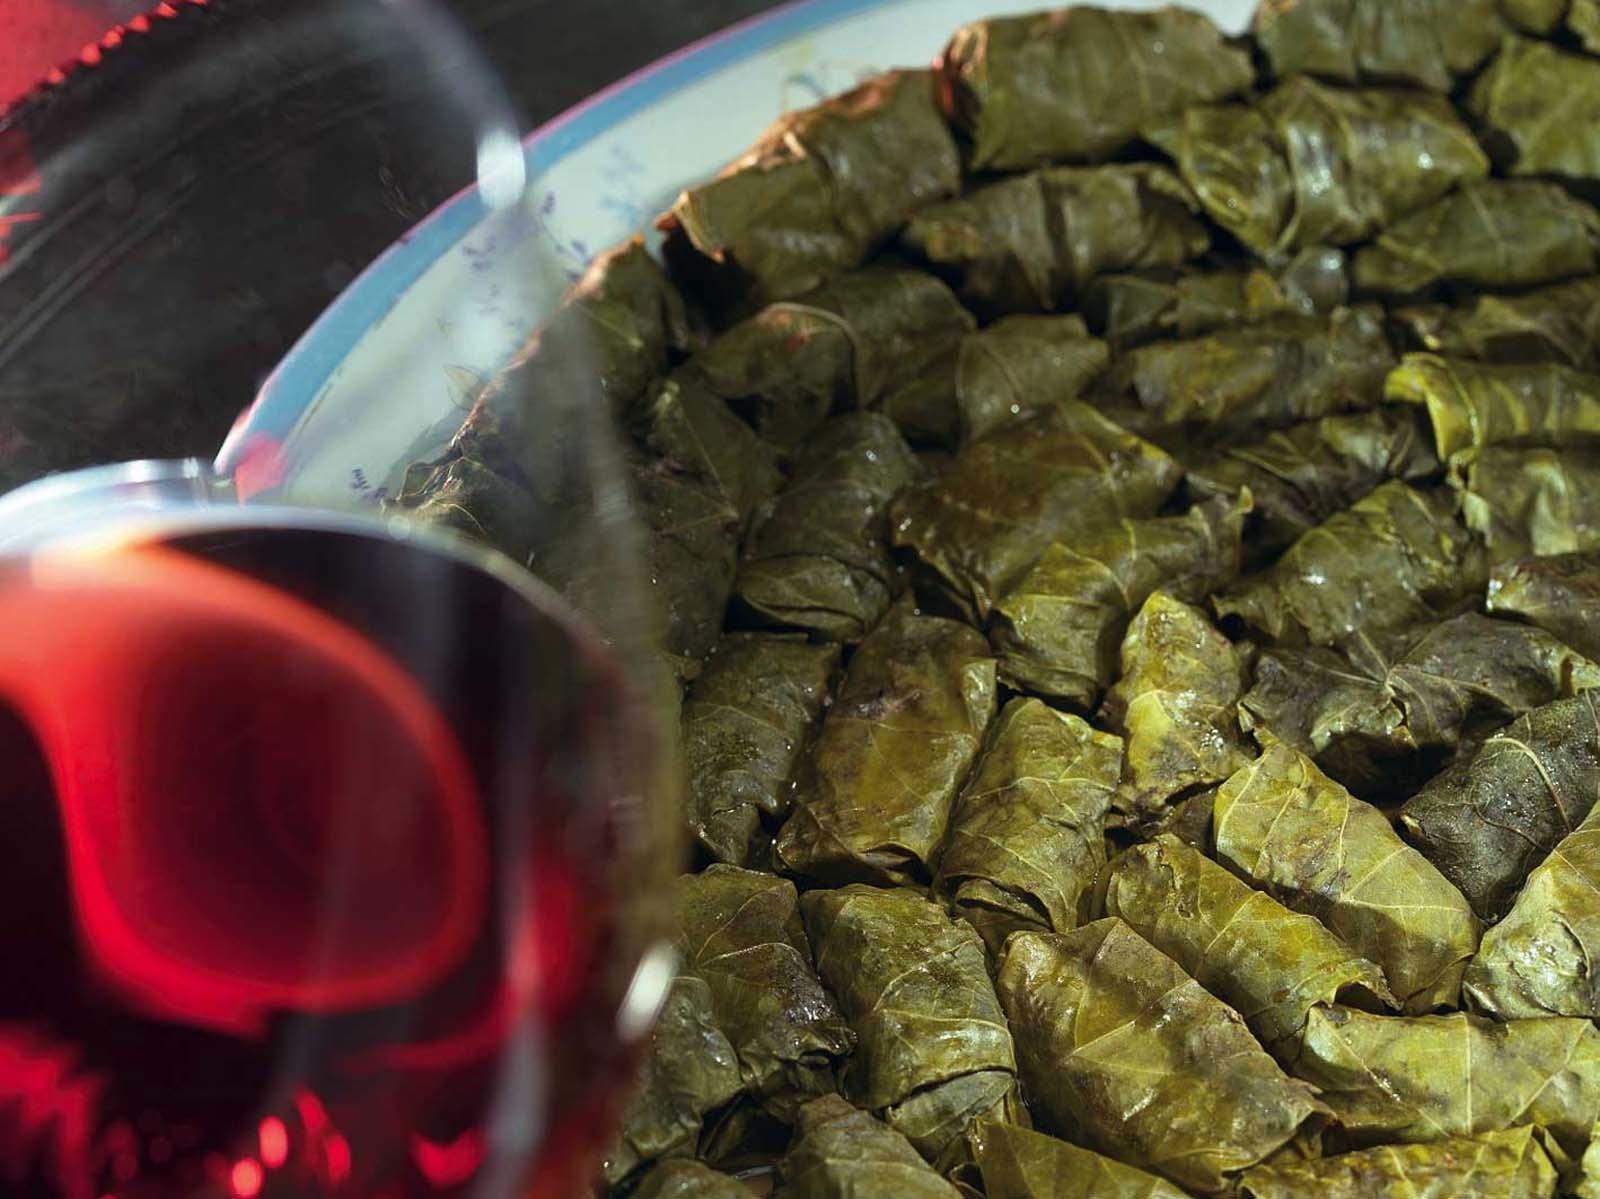 Долма в виноградных листьях классический пошаговый рецепт с фото